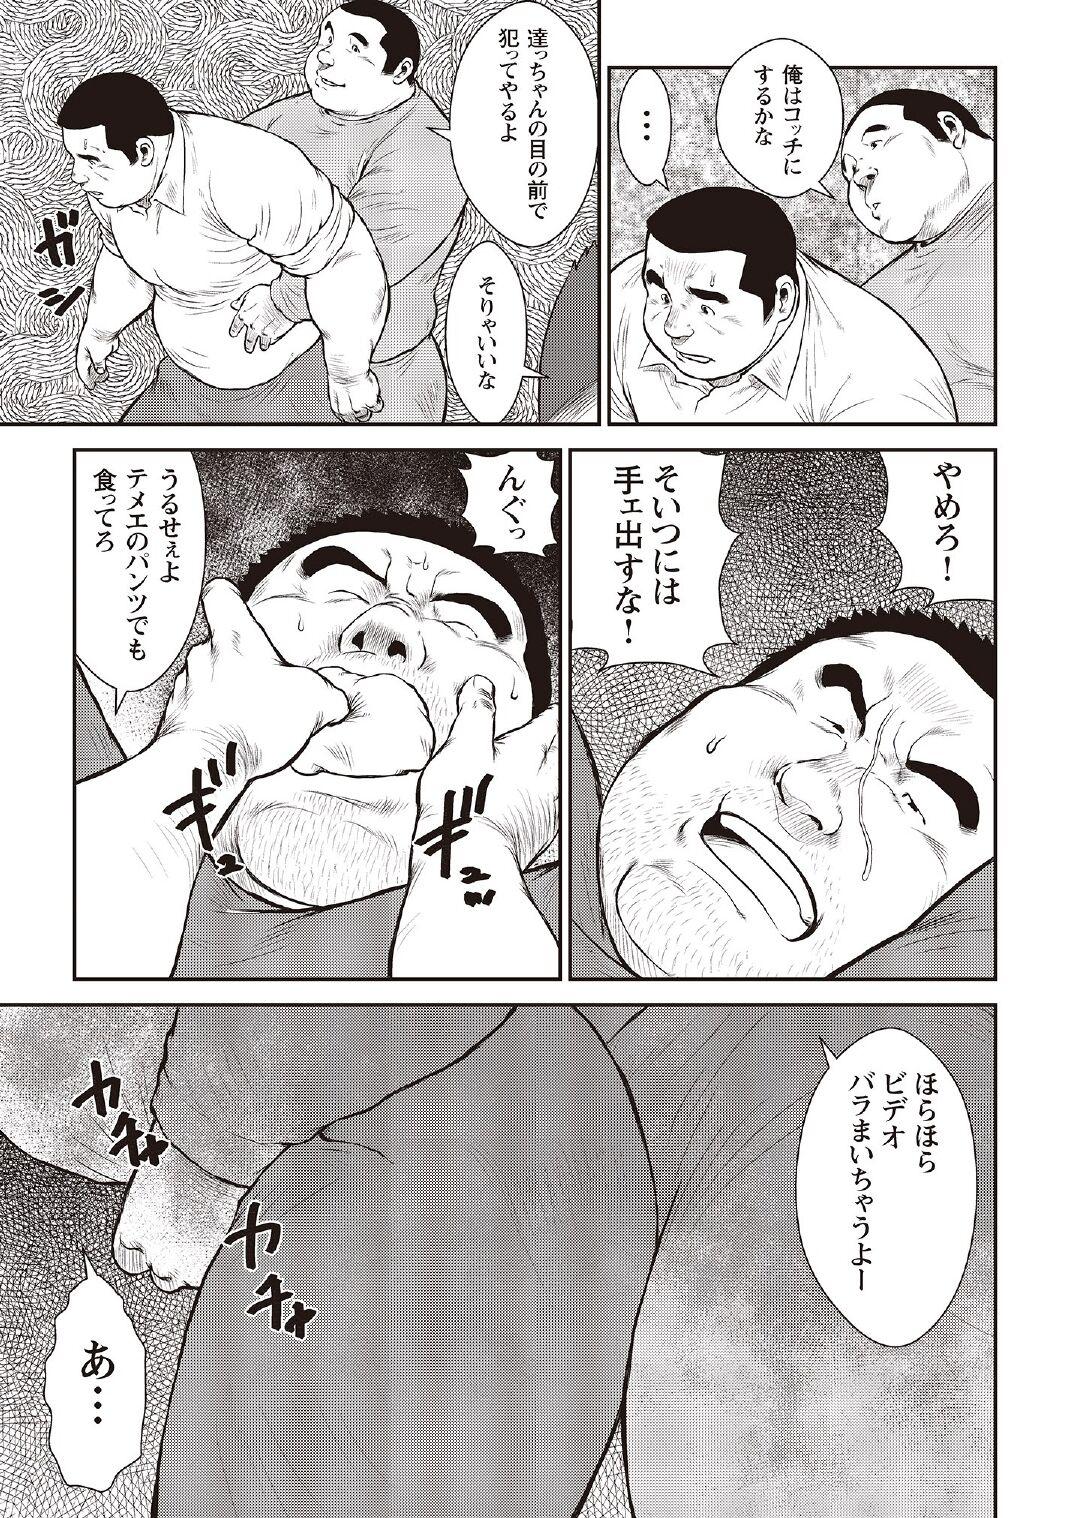 [Ebisubashi Seizou] Ebisubashi Seizou Tanpen Manga Shuu 2 Fuuun! Danshi Ryou [Bunsatsuban] PART 3 Bousou Hantou Taifuu Zensen Ch. 3 ~ Ch. 5 [Digital] 44